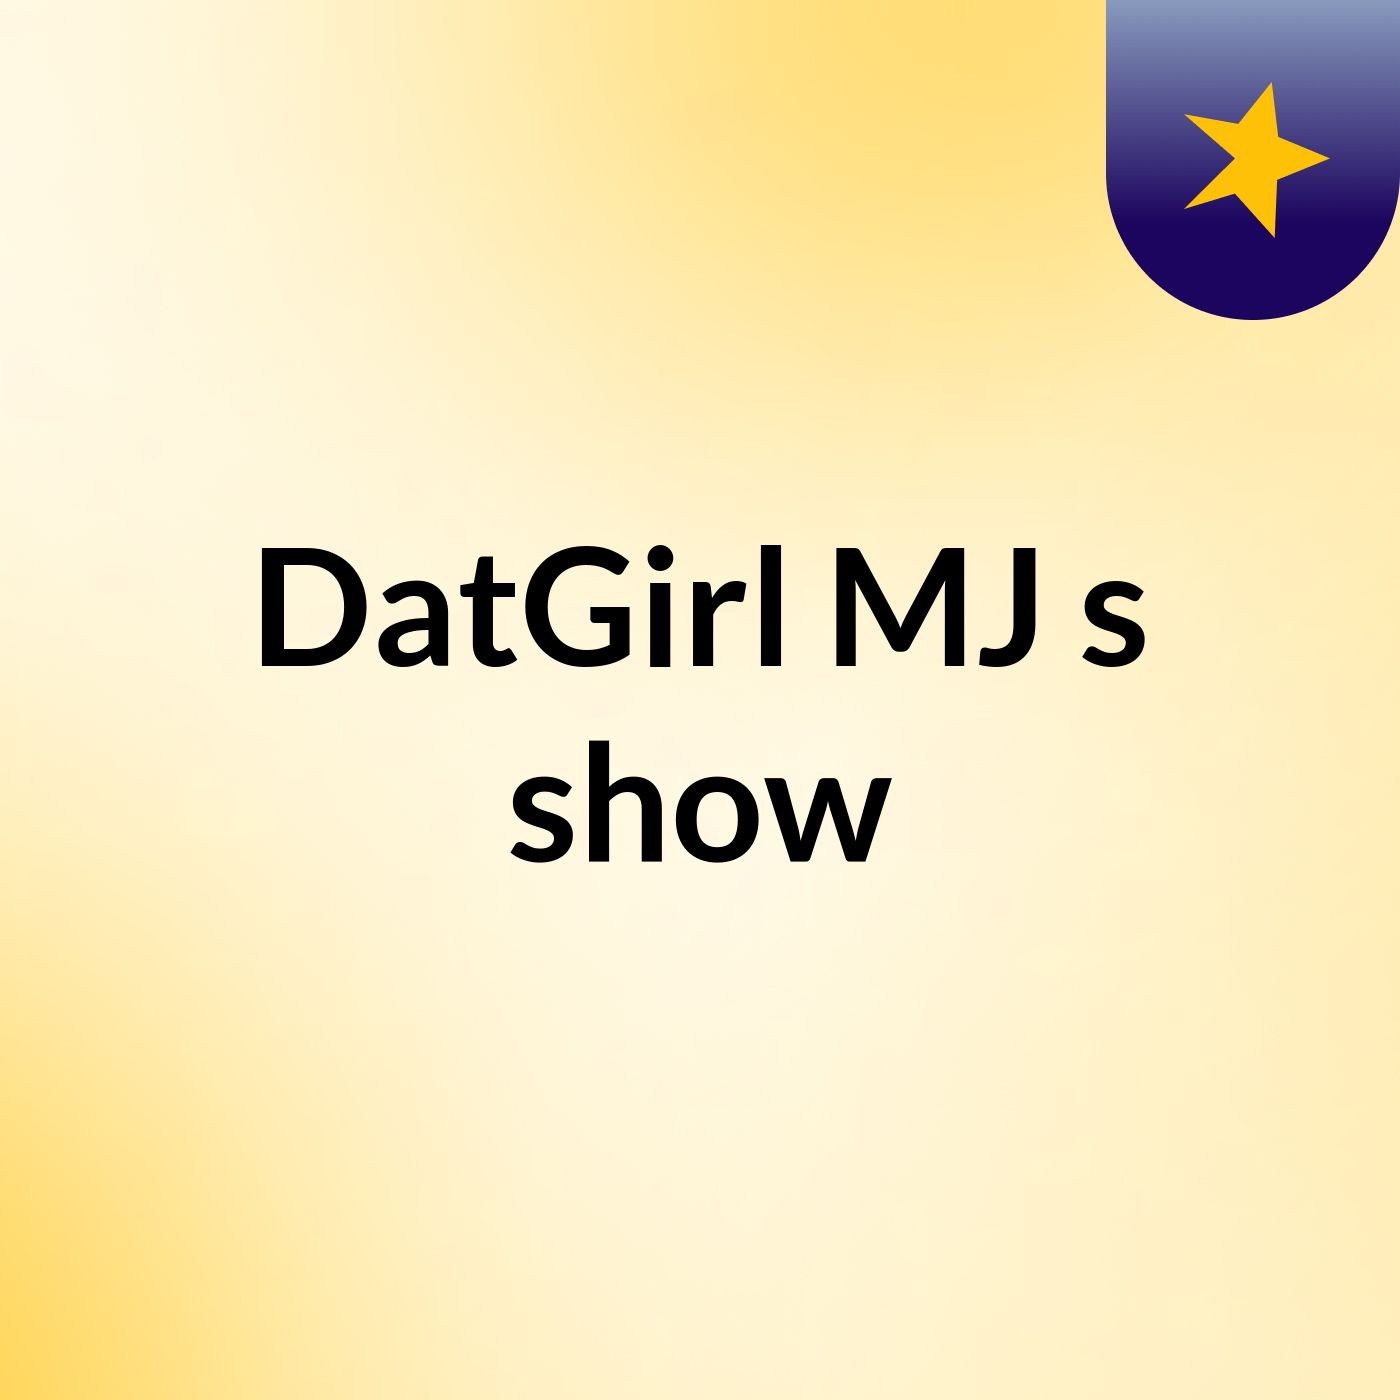 DatGirl MJ's show